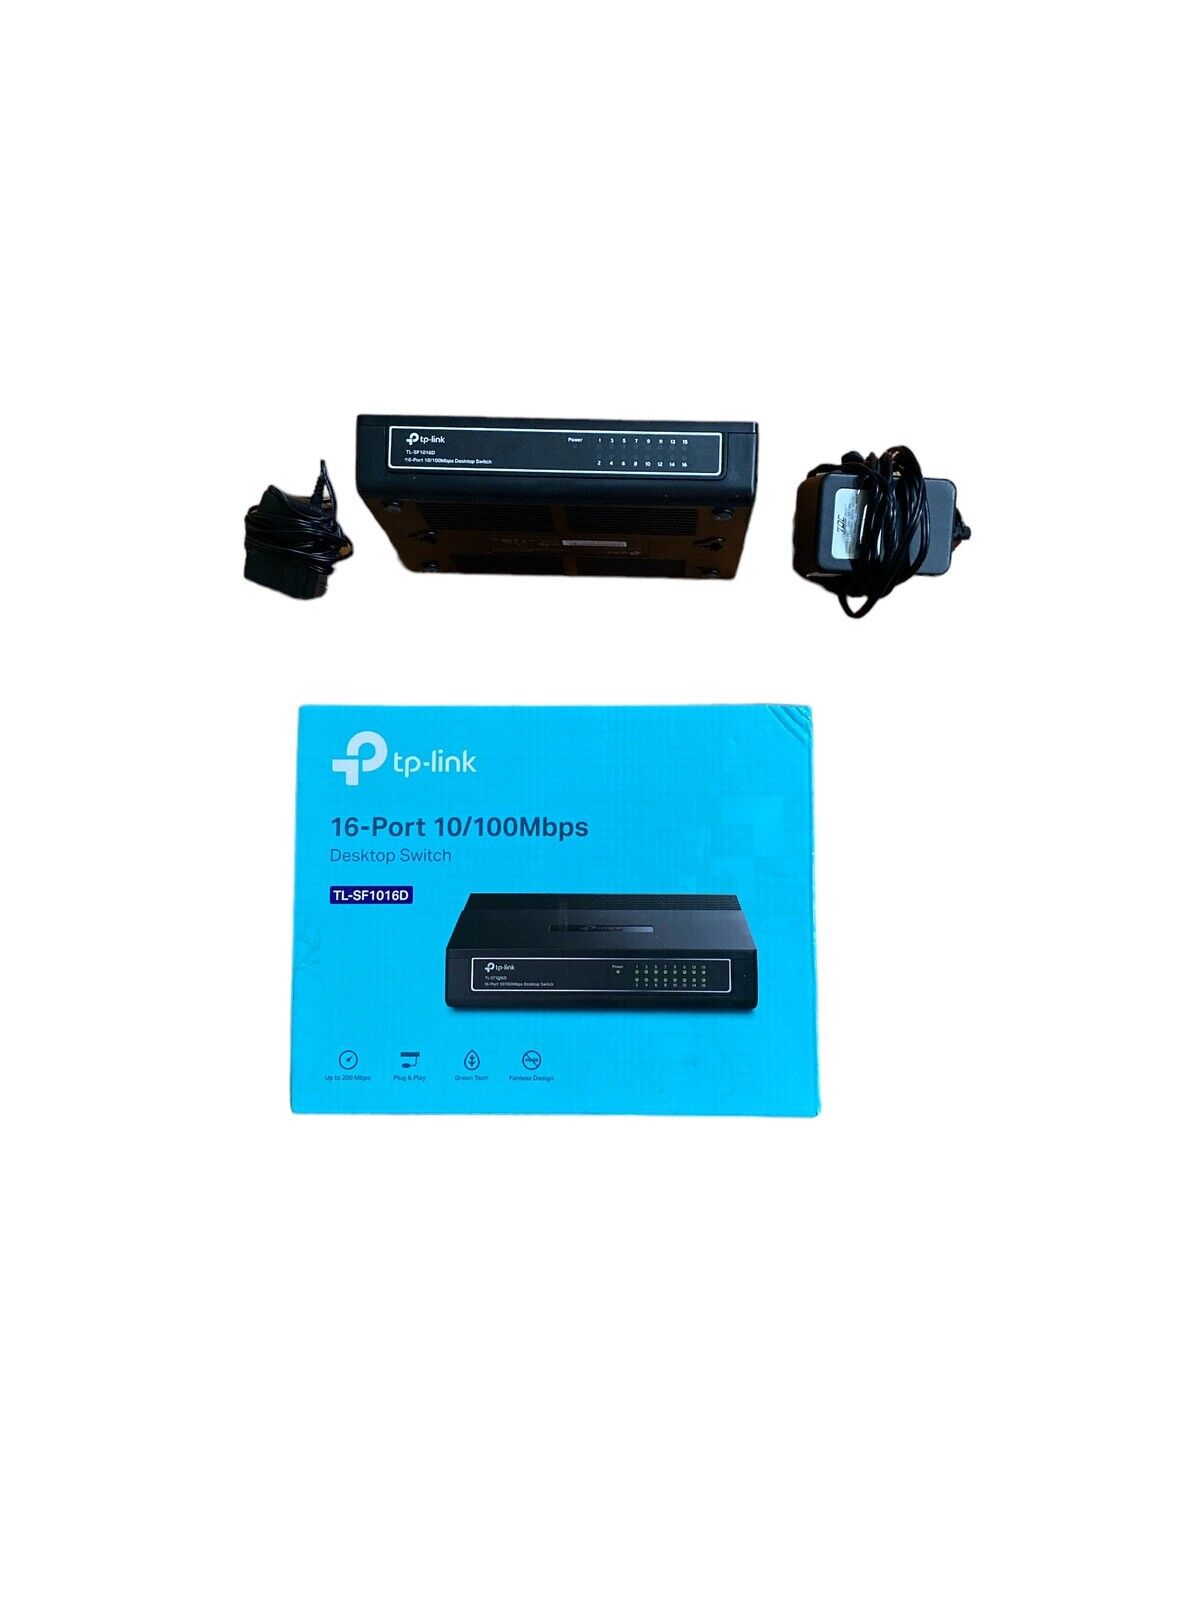 TP-LINK 16-Port 10/100Mbps Desktop Switch TL-SF1016D #0293 z52/11